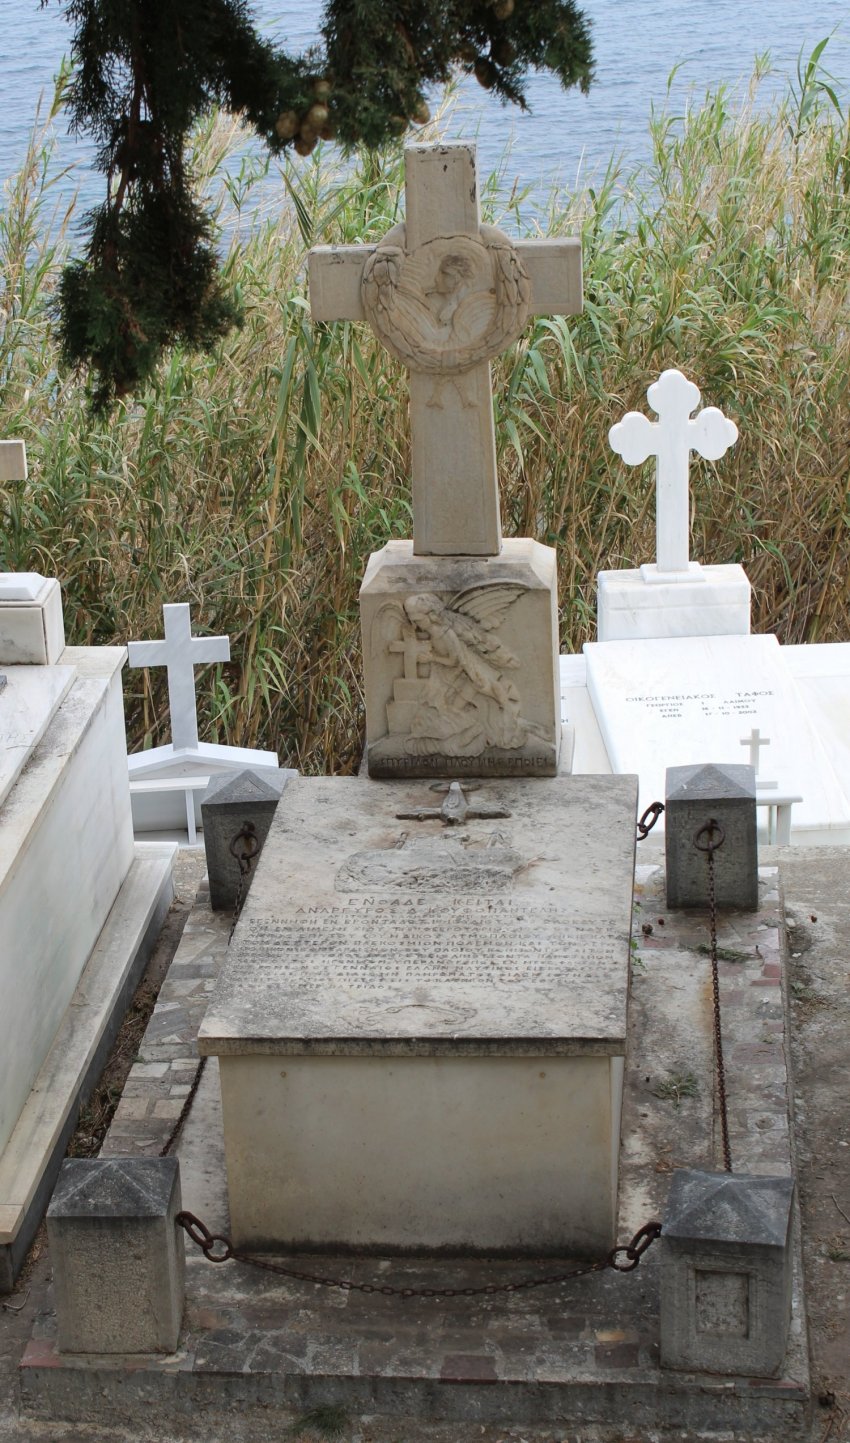 Ο τάφος του Ανάργυρου Κουφοπαντελή στη Μονή Μυρσινιδίου.